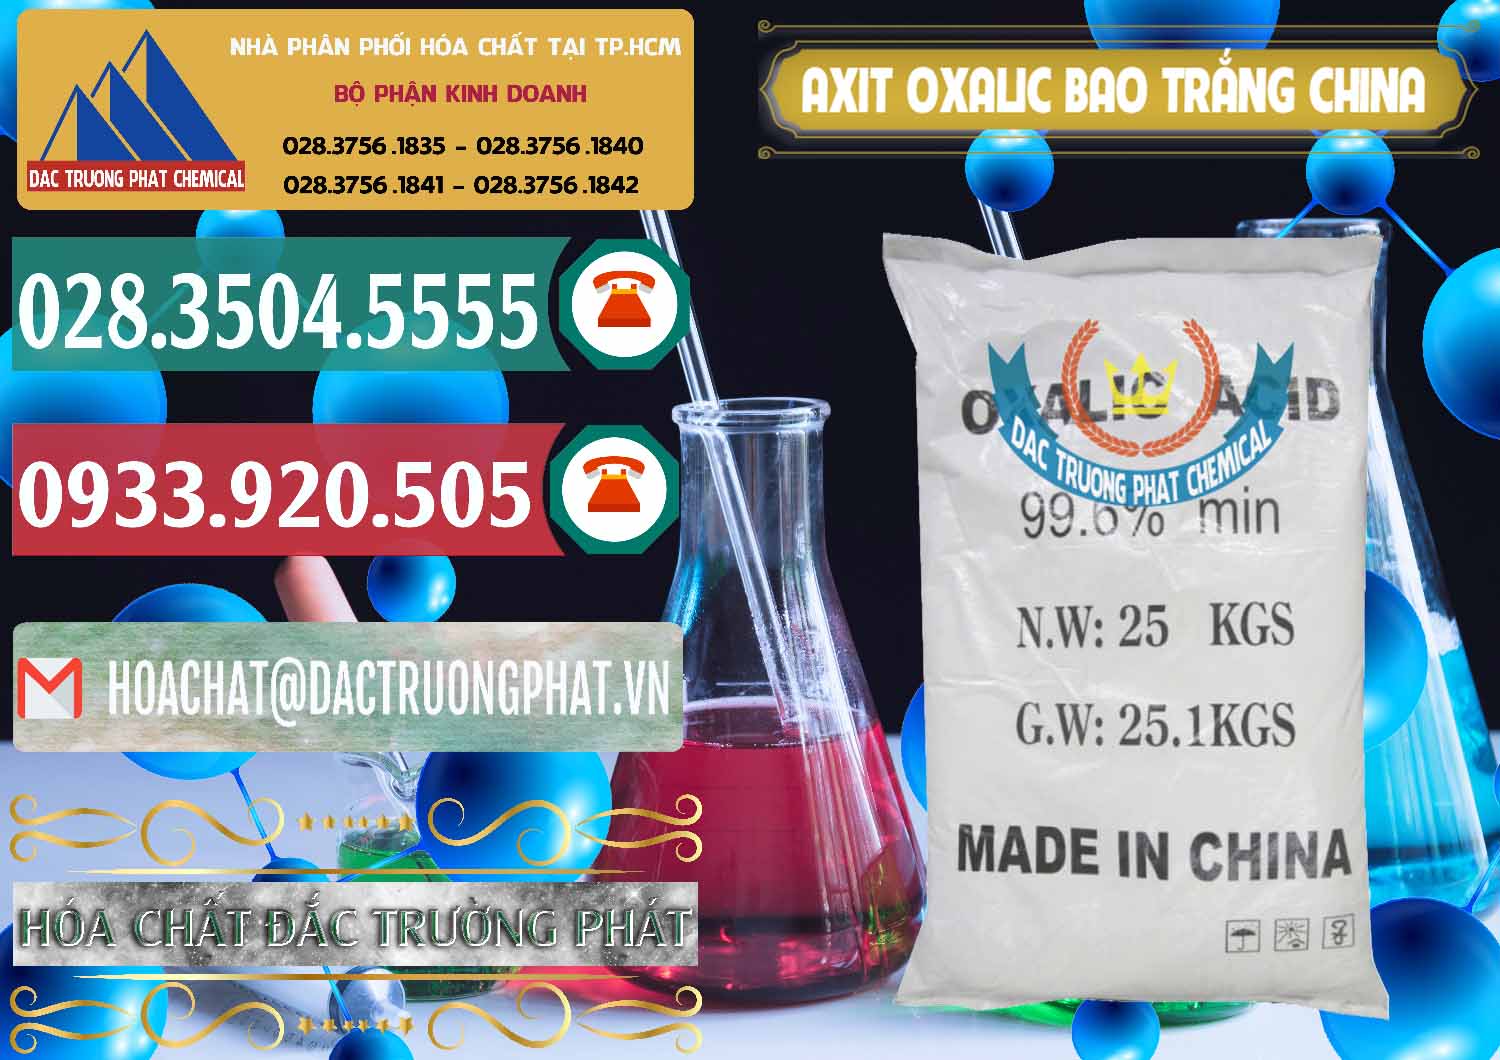 Nơi chuyên cung cấp & bán Acid Oxalic – Axit Oxalic 99.6% Bao Trắng Trung Quốc China - 0270 - Cty chuyên bán và cung cấp hóa chất tại TP.HCM - muabanhoachat.vn